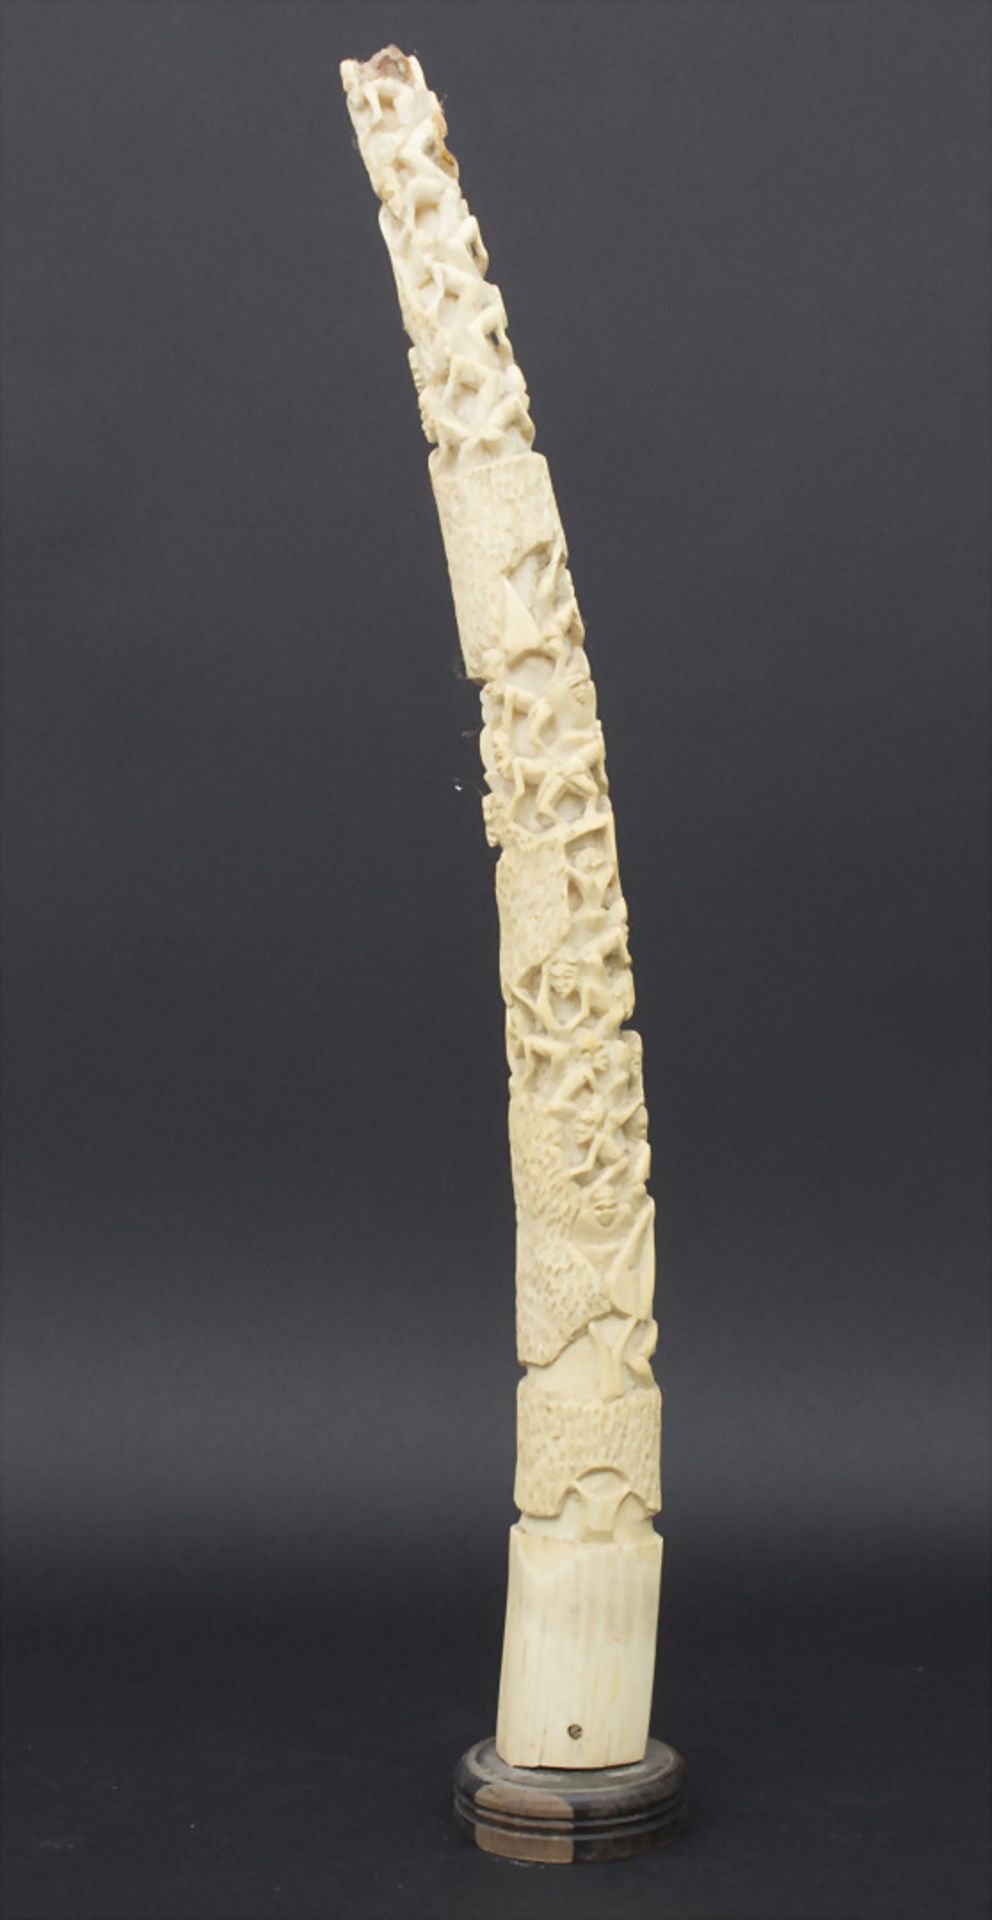 Große Elfenbein-Schnitzerei, Afrika, um 1900-20,Material: Elfenbein geschnitzt, HolzstandLänge: 70